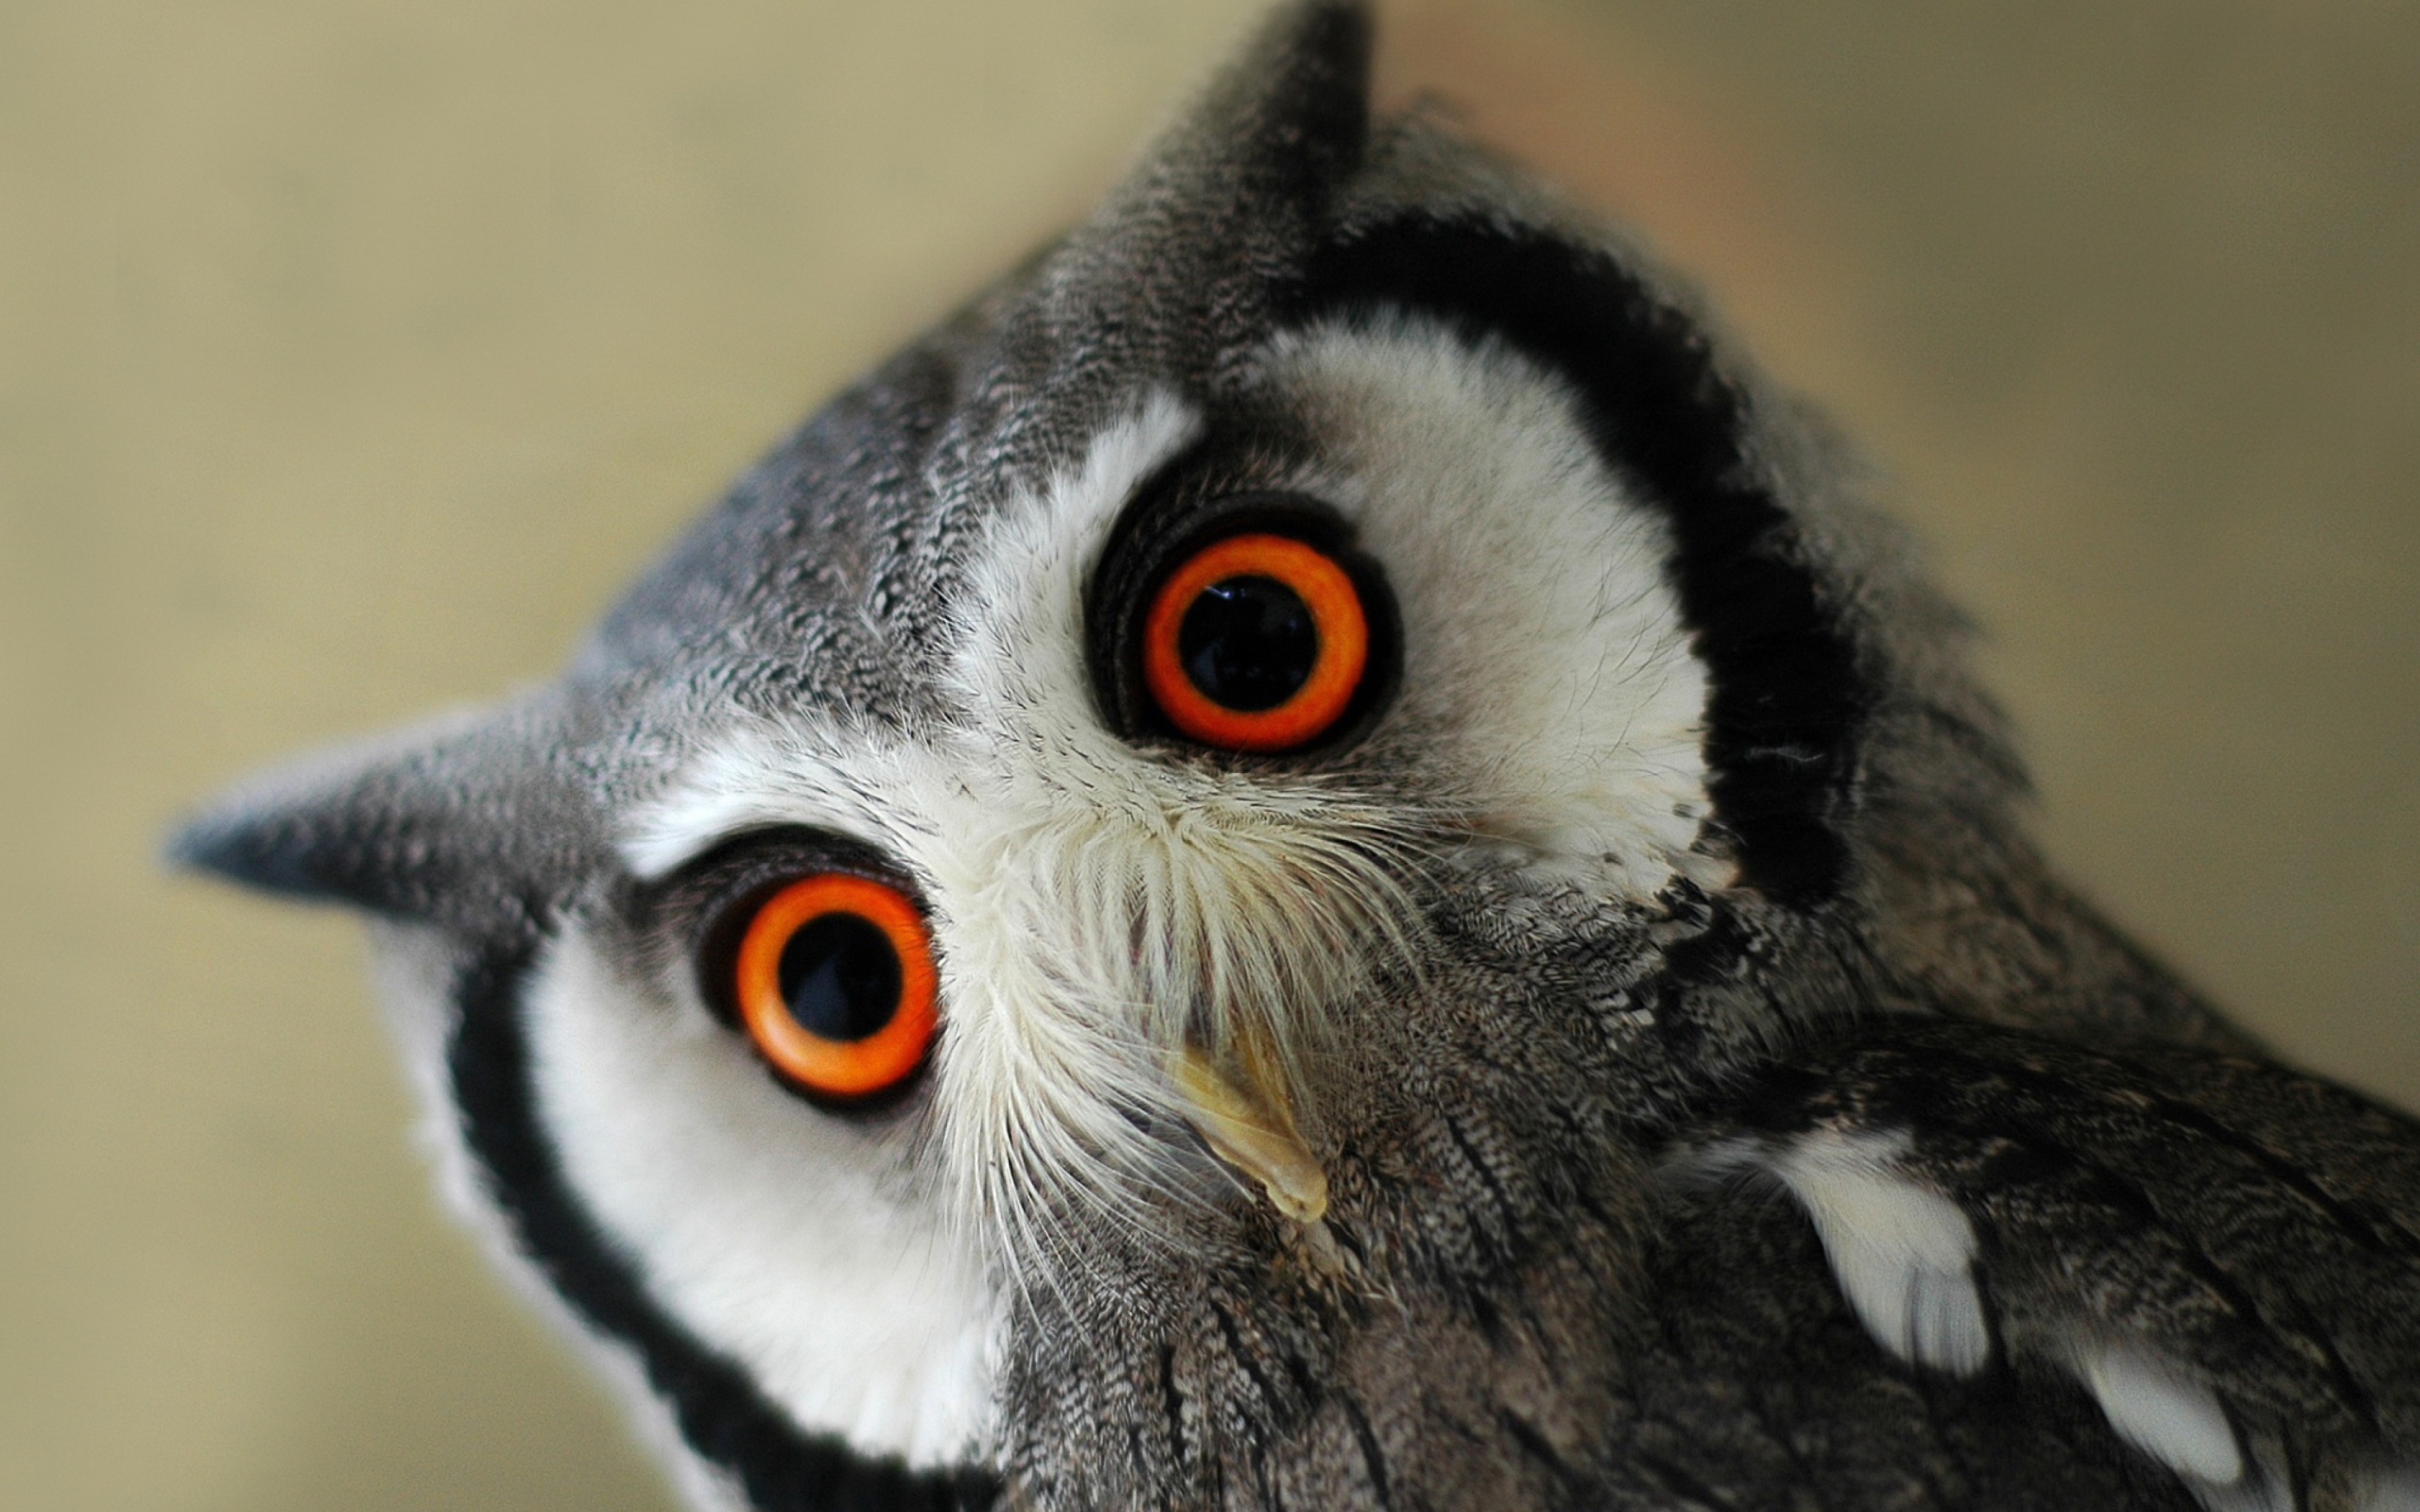 Sfondi Cute Owl 2560x1600